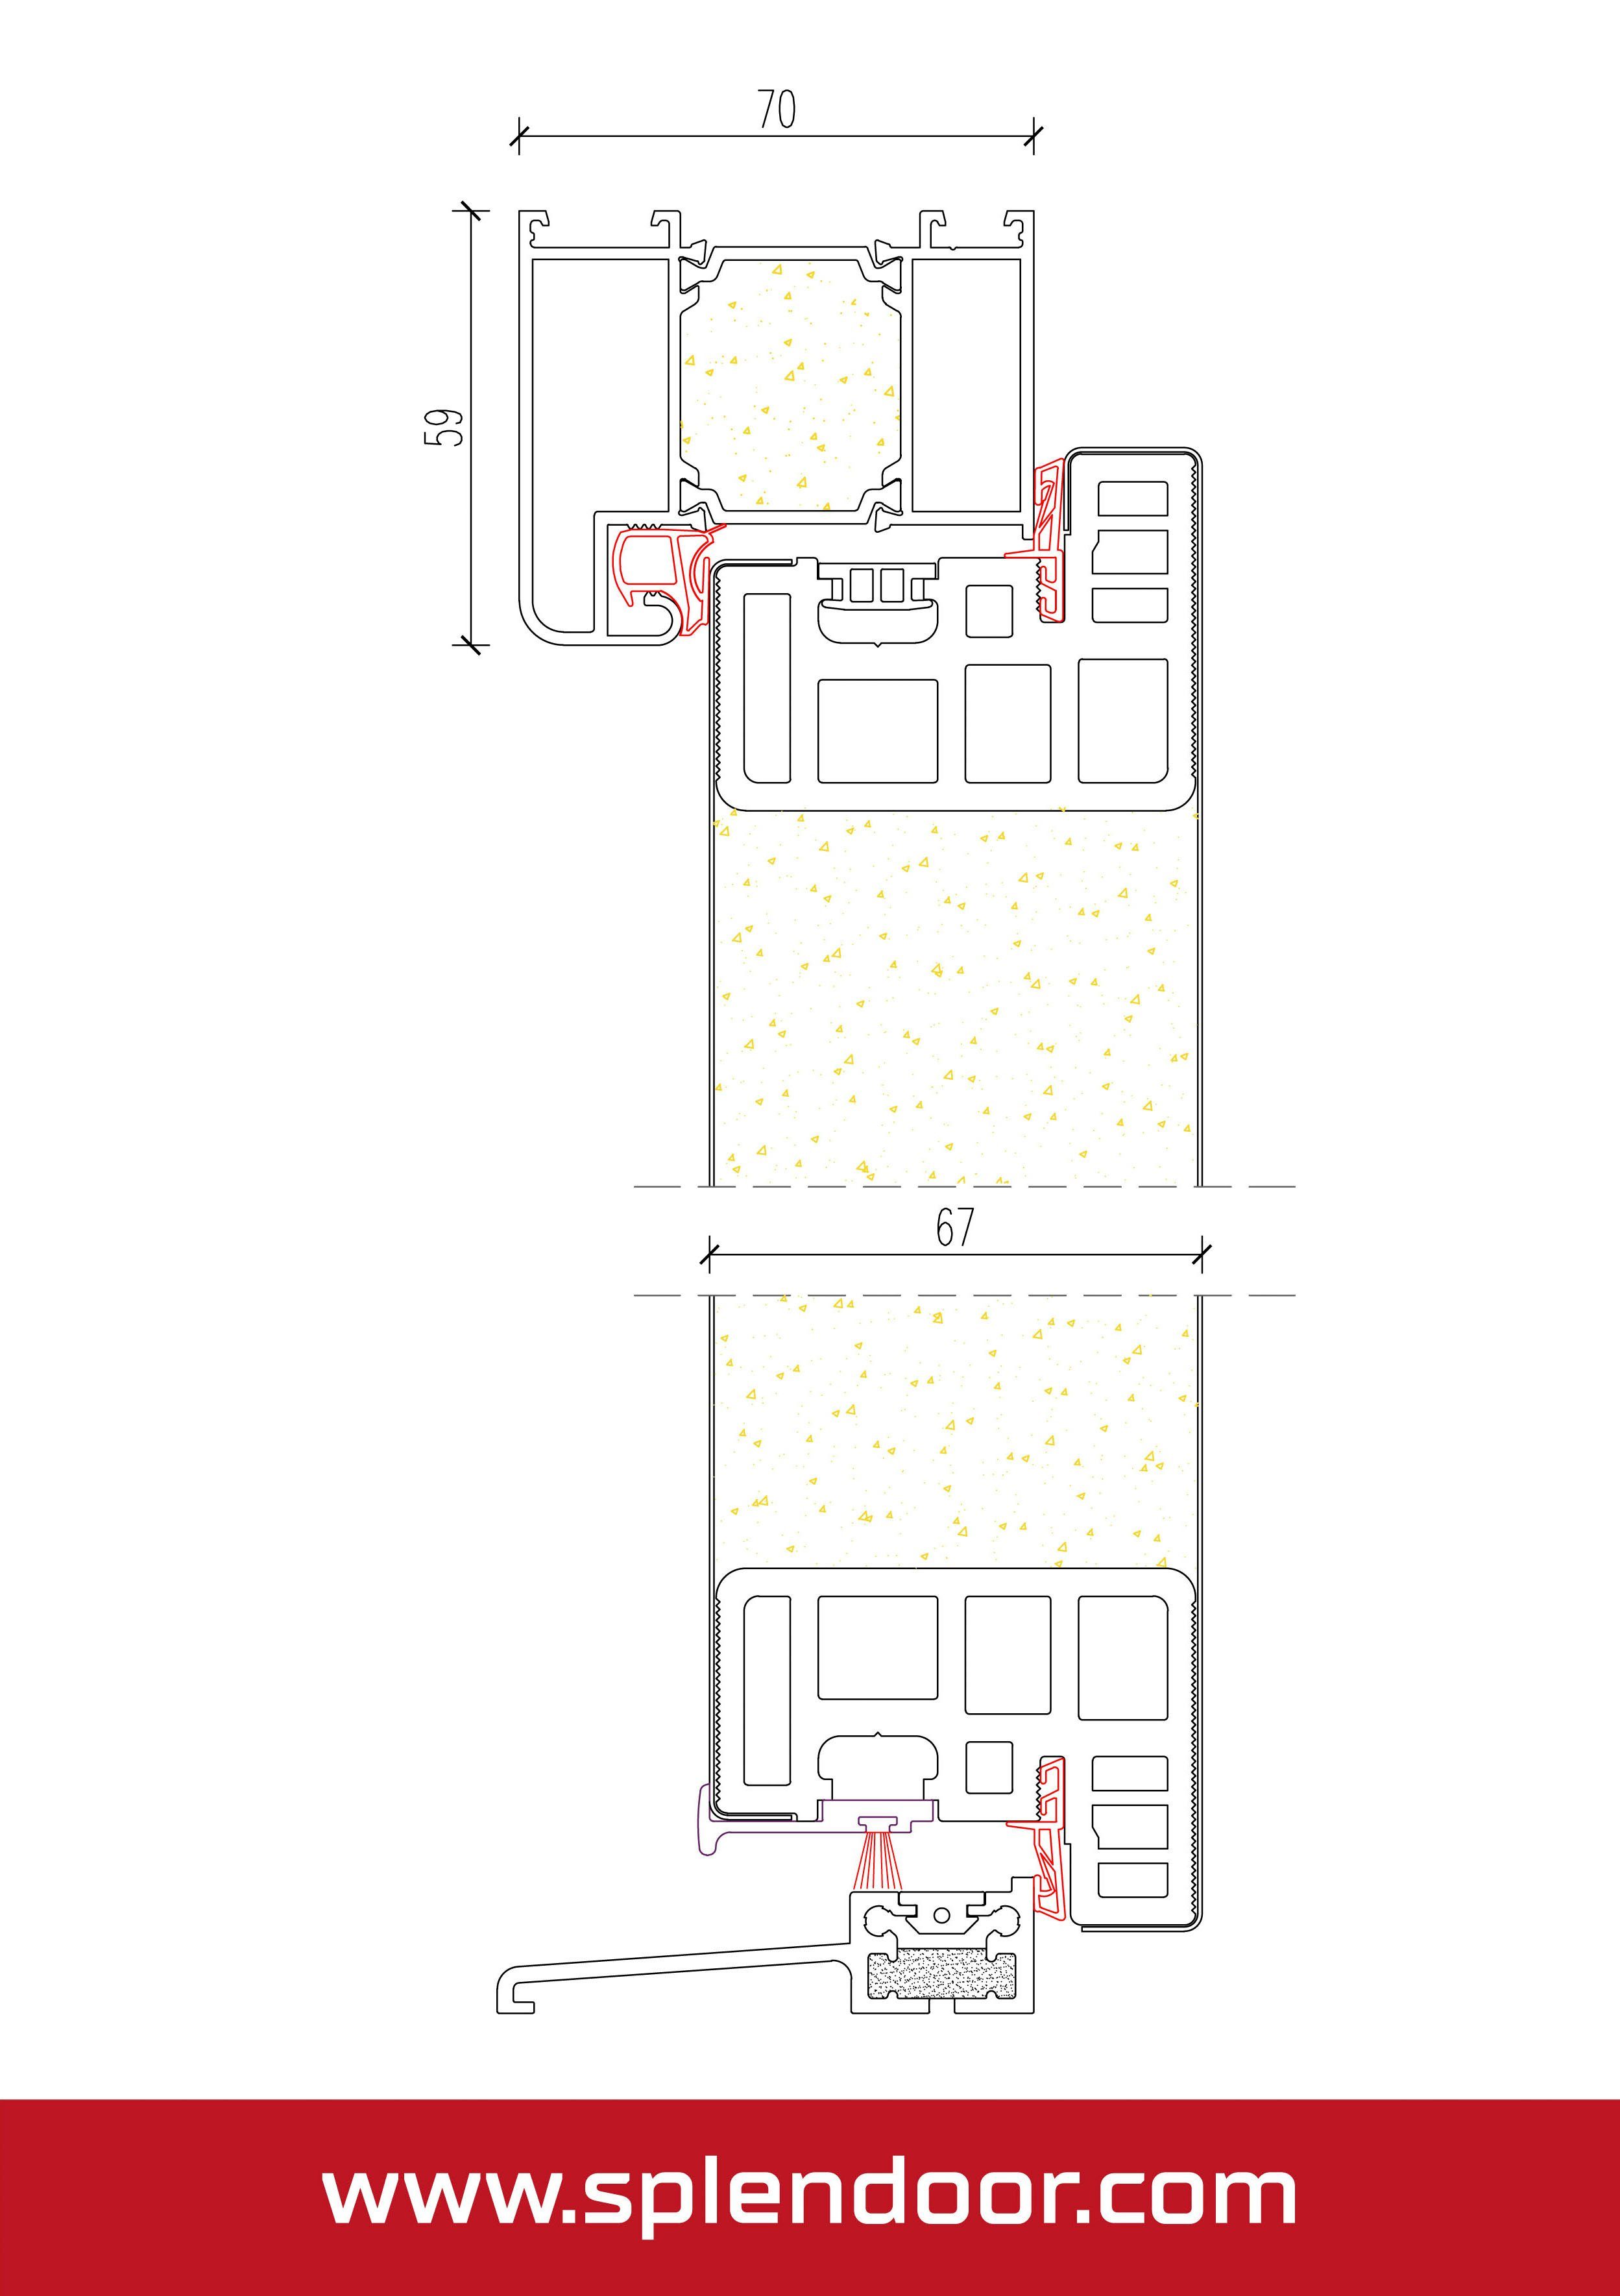 3-fach mit einbruchhemmend wärmegedämmt, SplenDoor Verglasung, & Türrahmen anthrazit (Set), mit RC2 Prime Haustür PULA